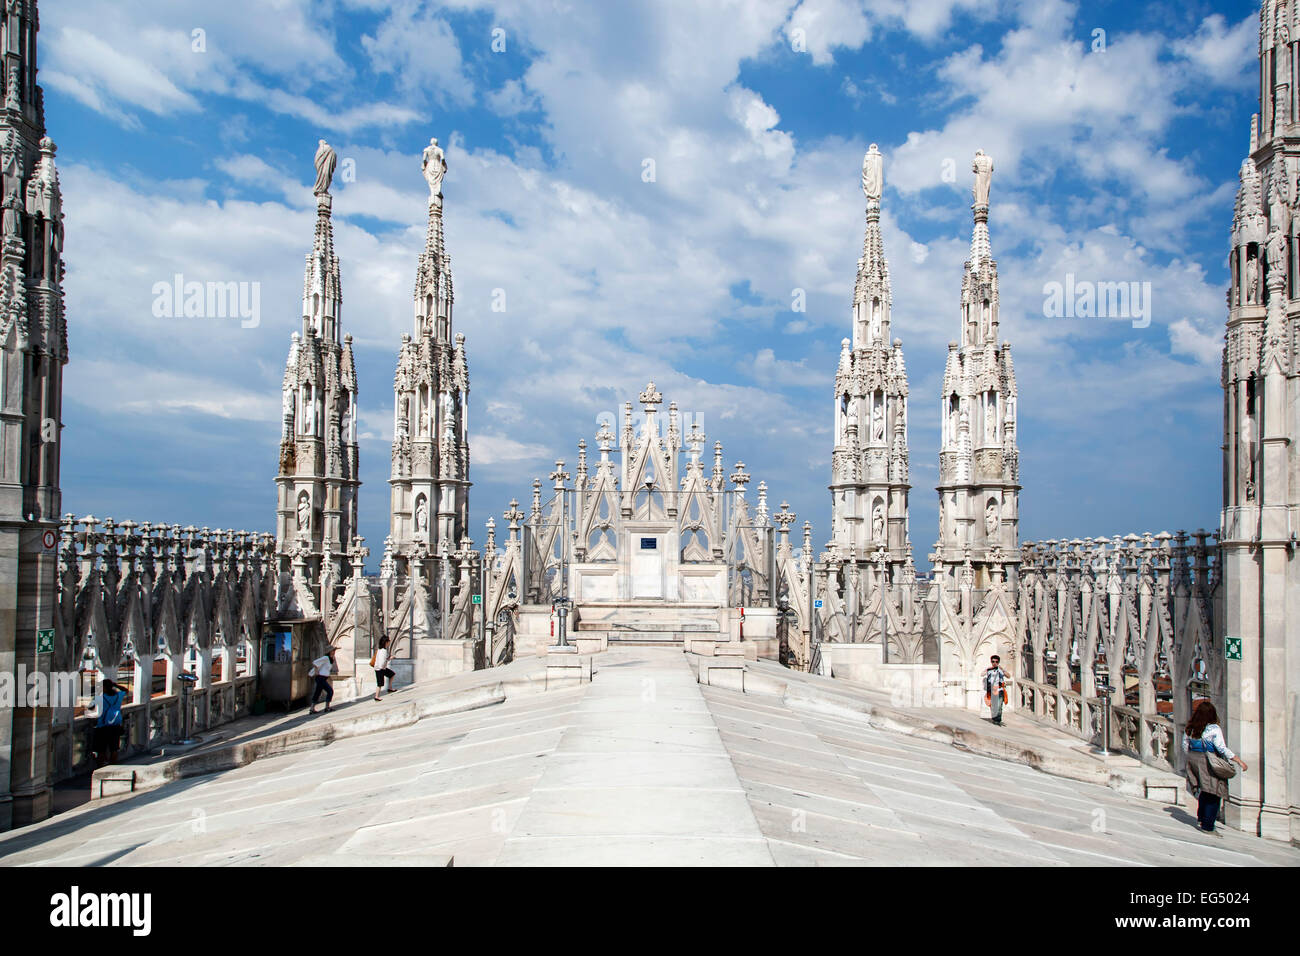 Guglie e persone sul tetto, Duomo di Milano, Milano, Italia Foto Stock